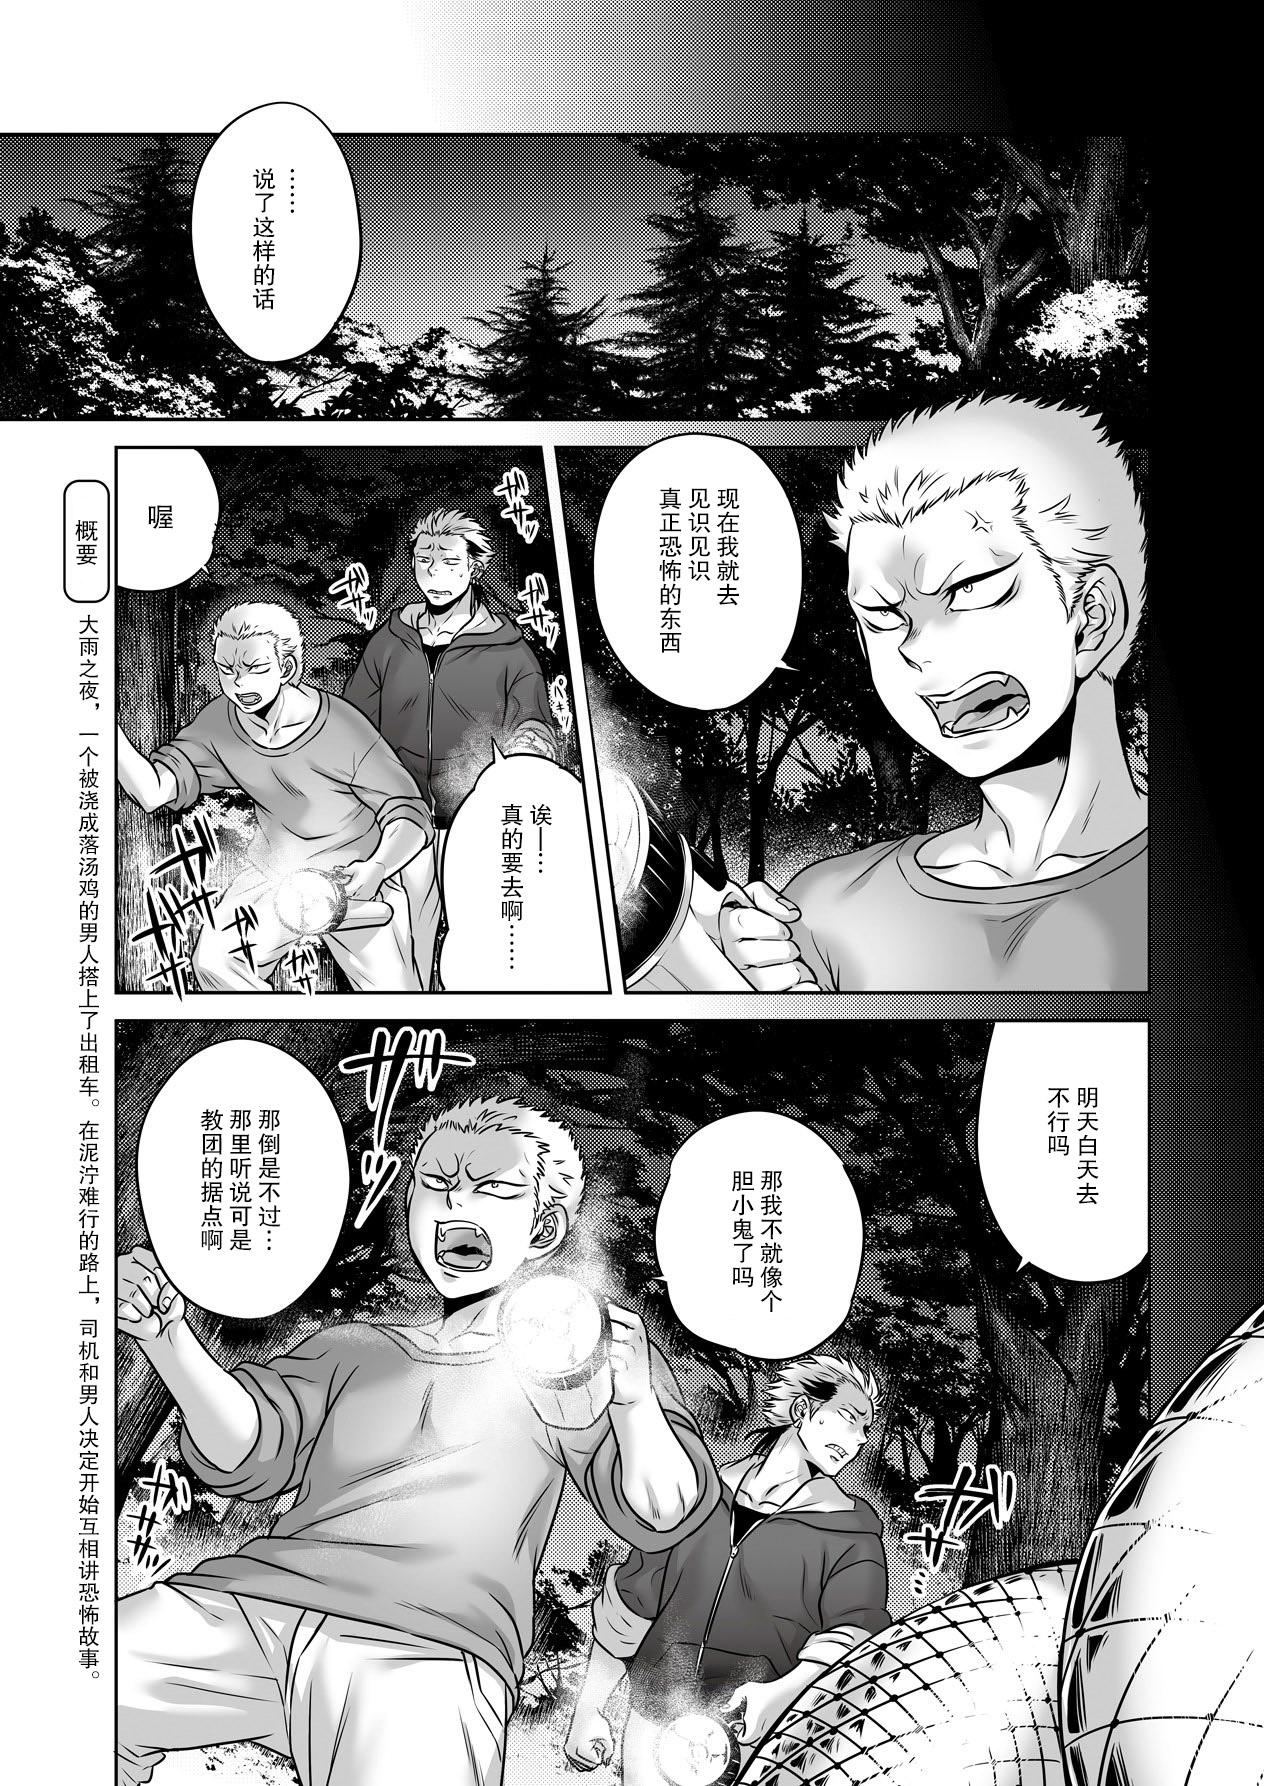 Solo Igyou Kaikitan "Kankandara" | Wonderfully Grotesque Mystery - Kankandara Lolicon - Page 3